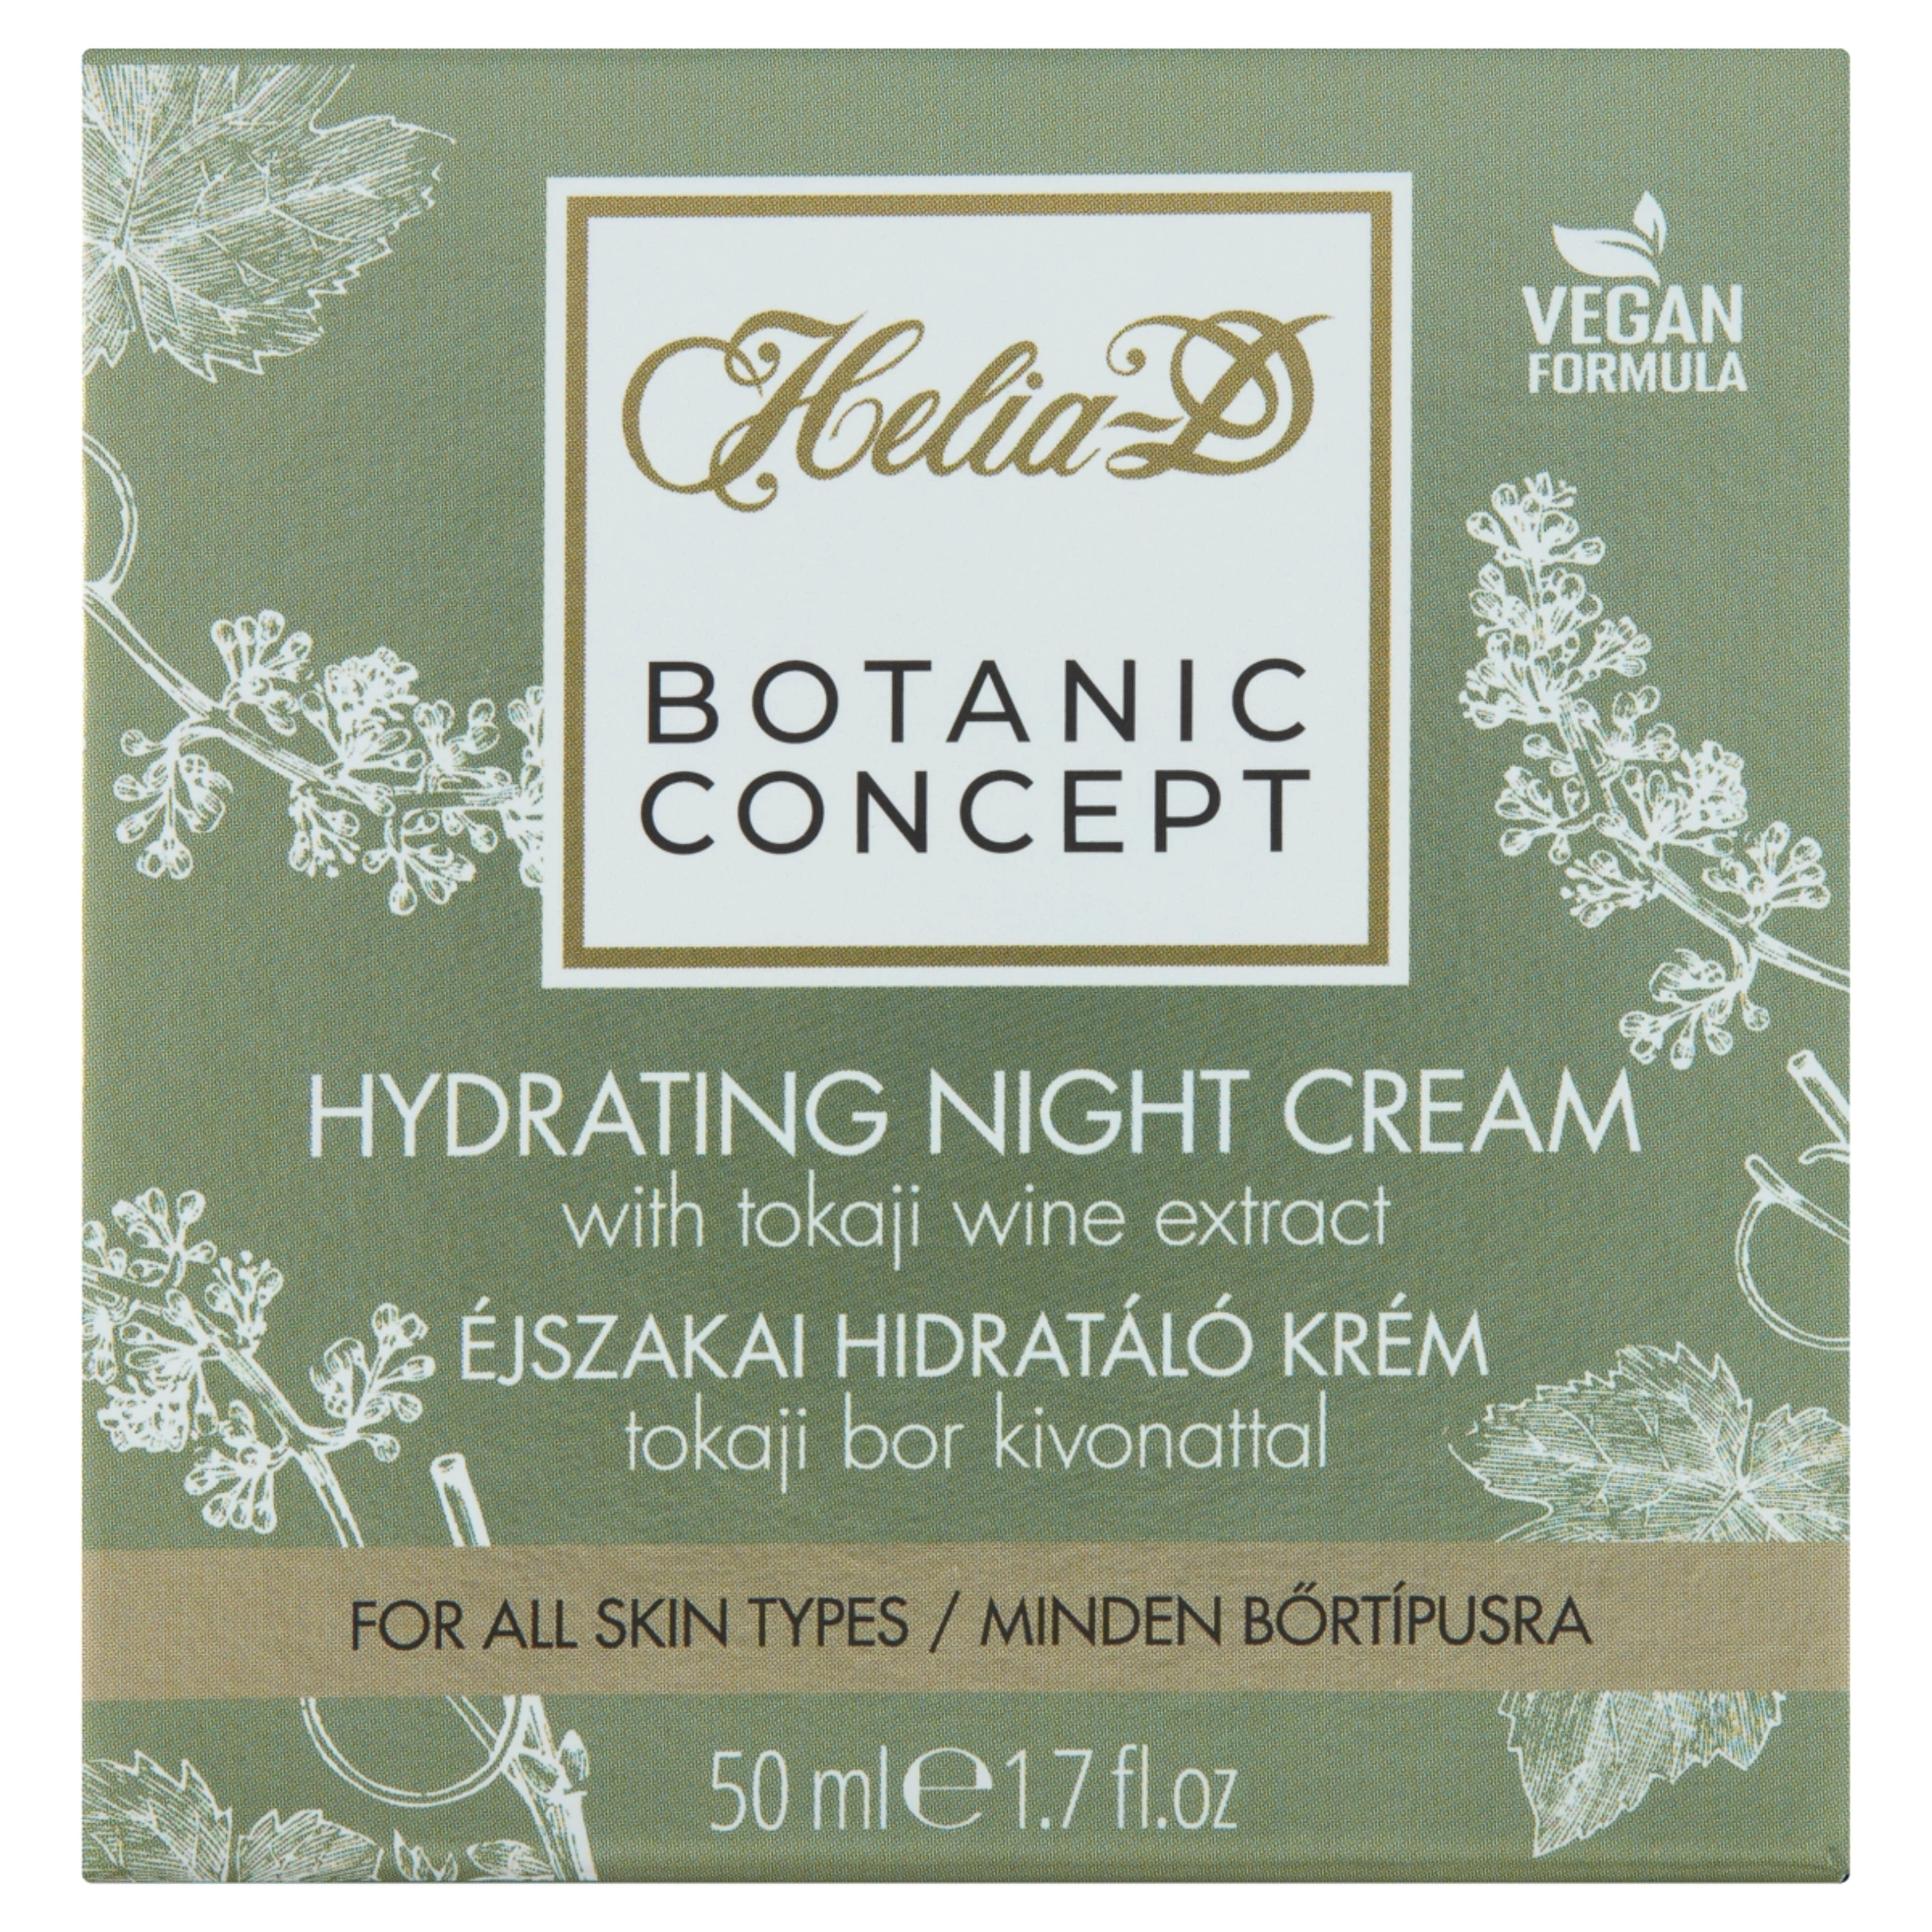 Helia-D Botanic Concept Tokaji Aszús Hidratáló éjszakai arckrém - 50 ml